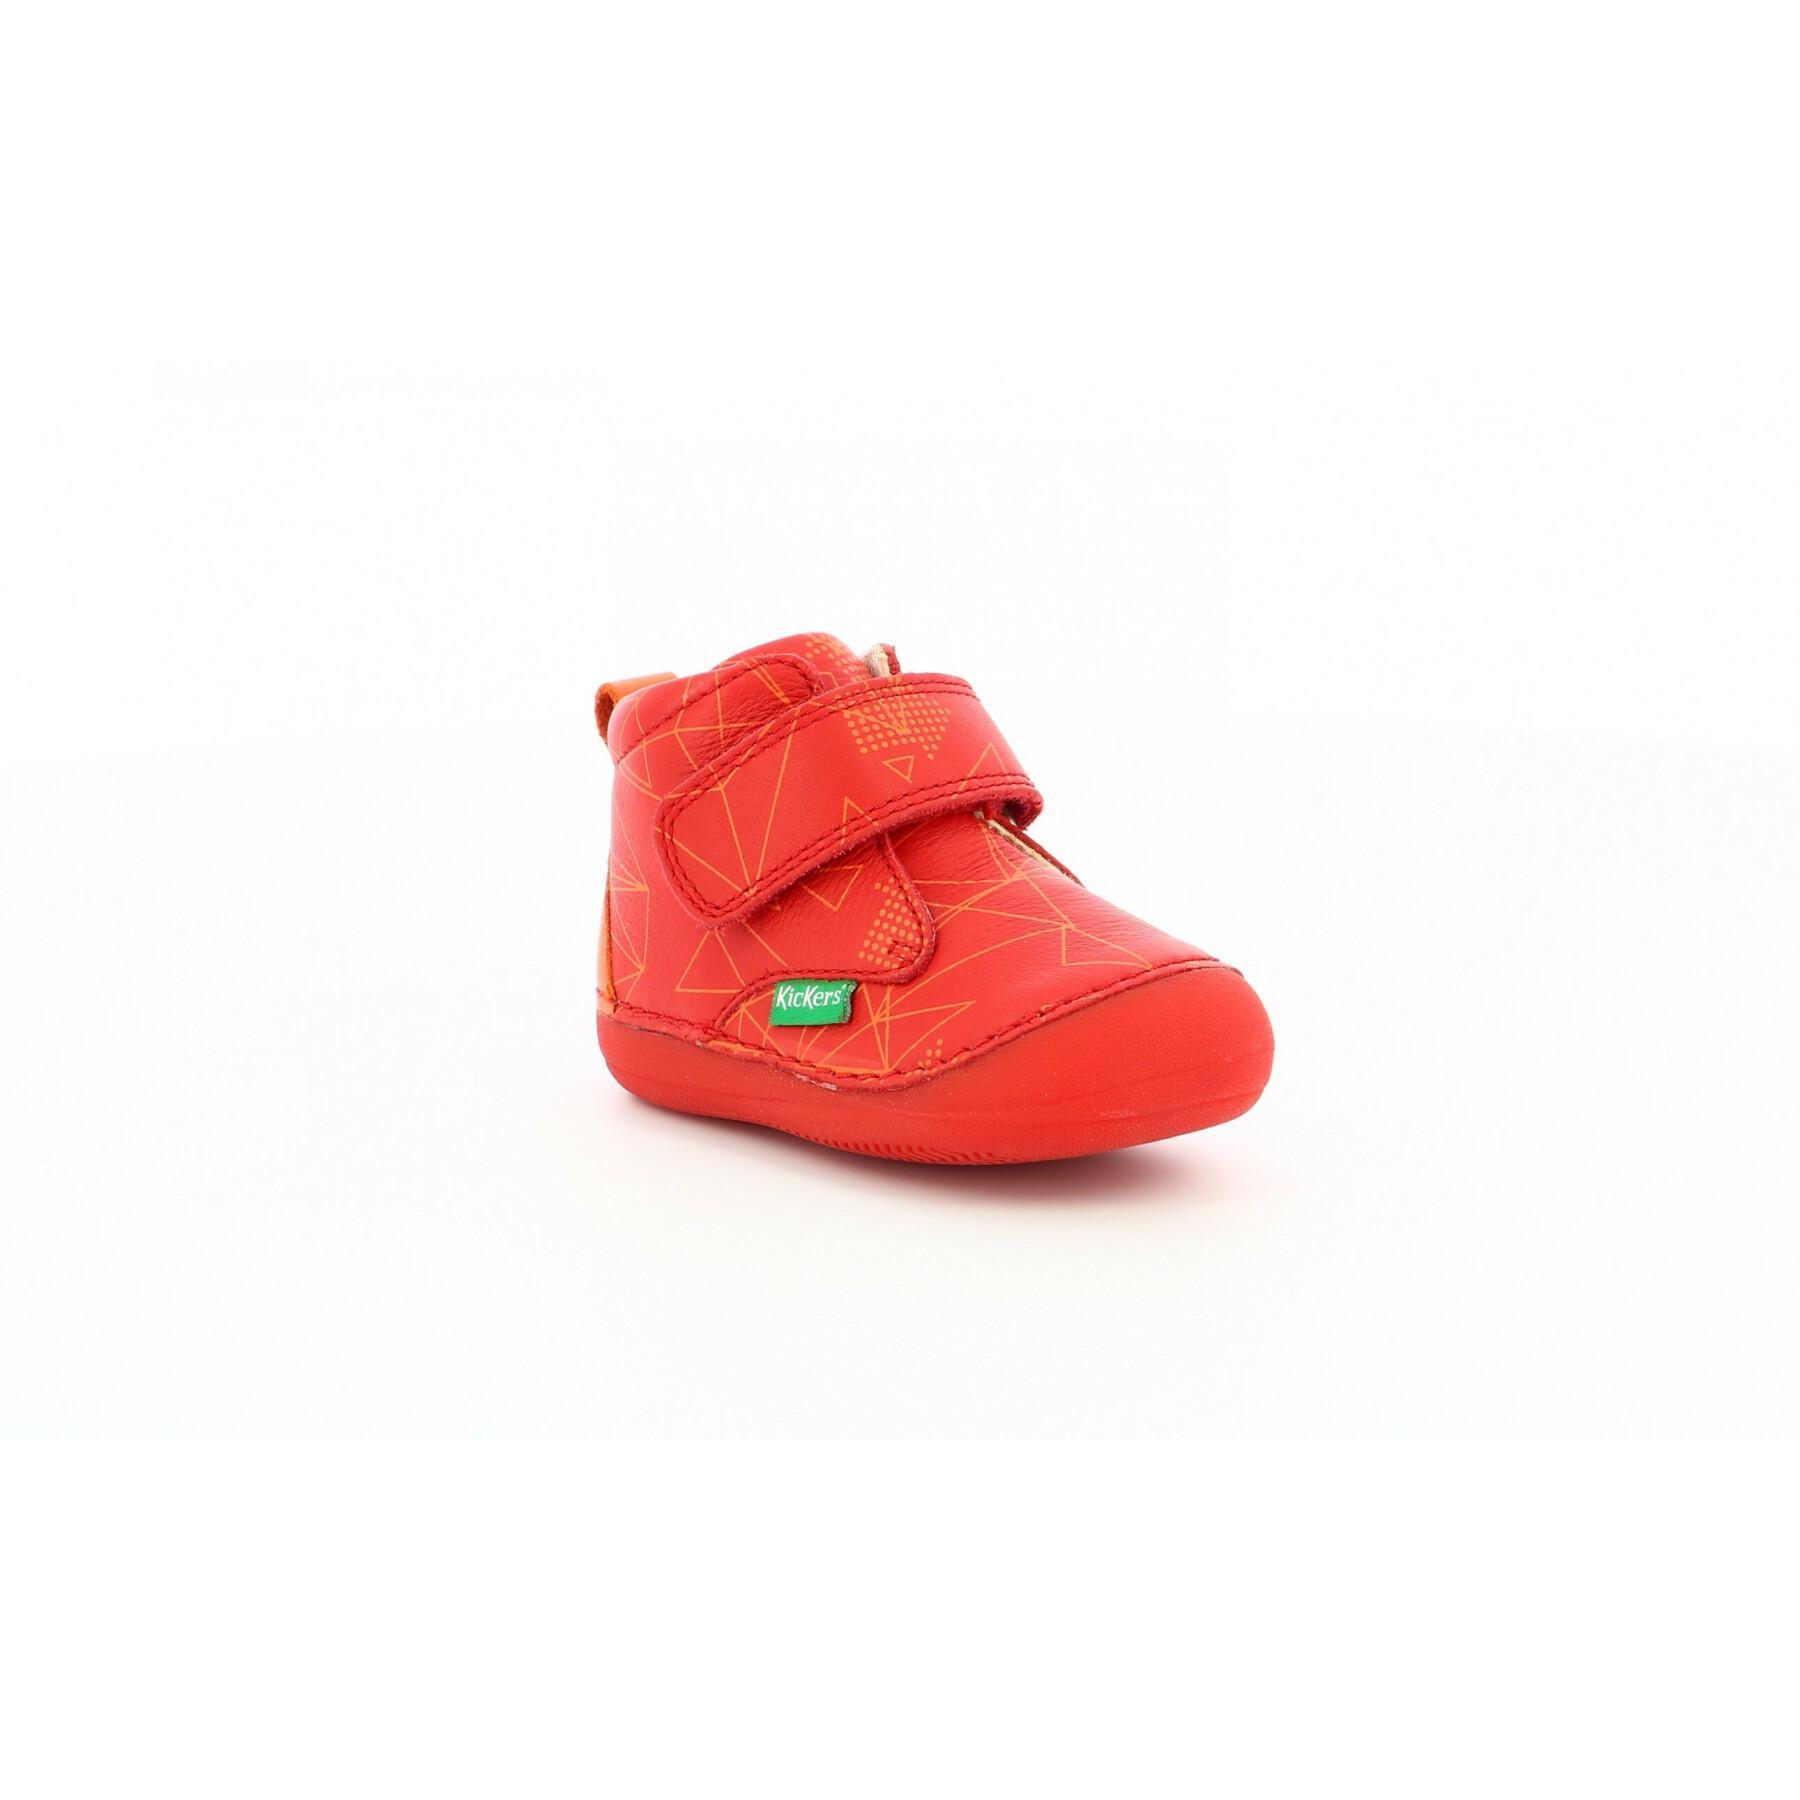 Baby boy shoes Kickers Sabio